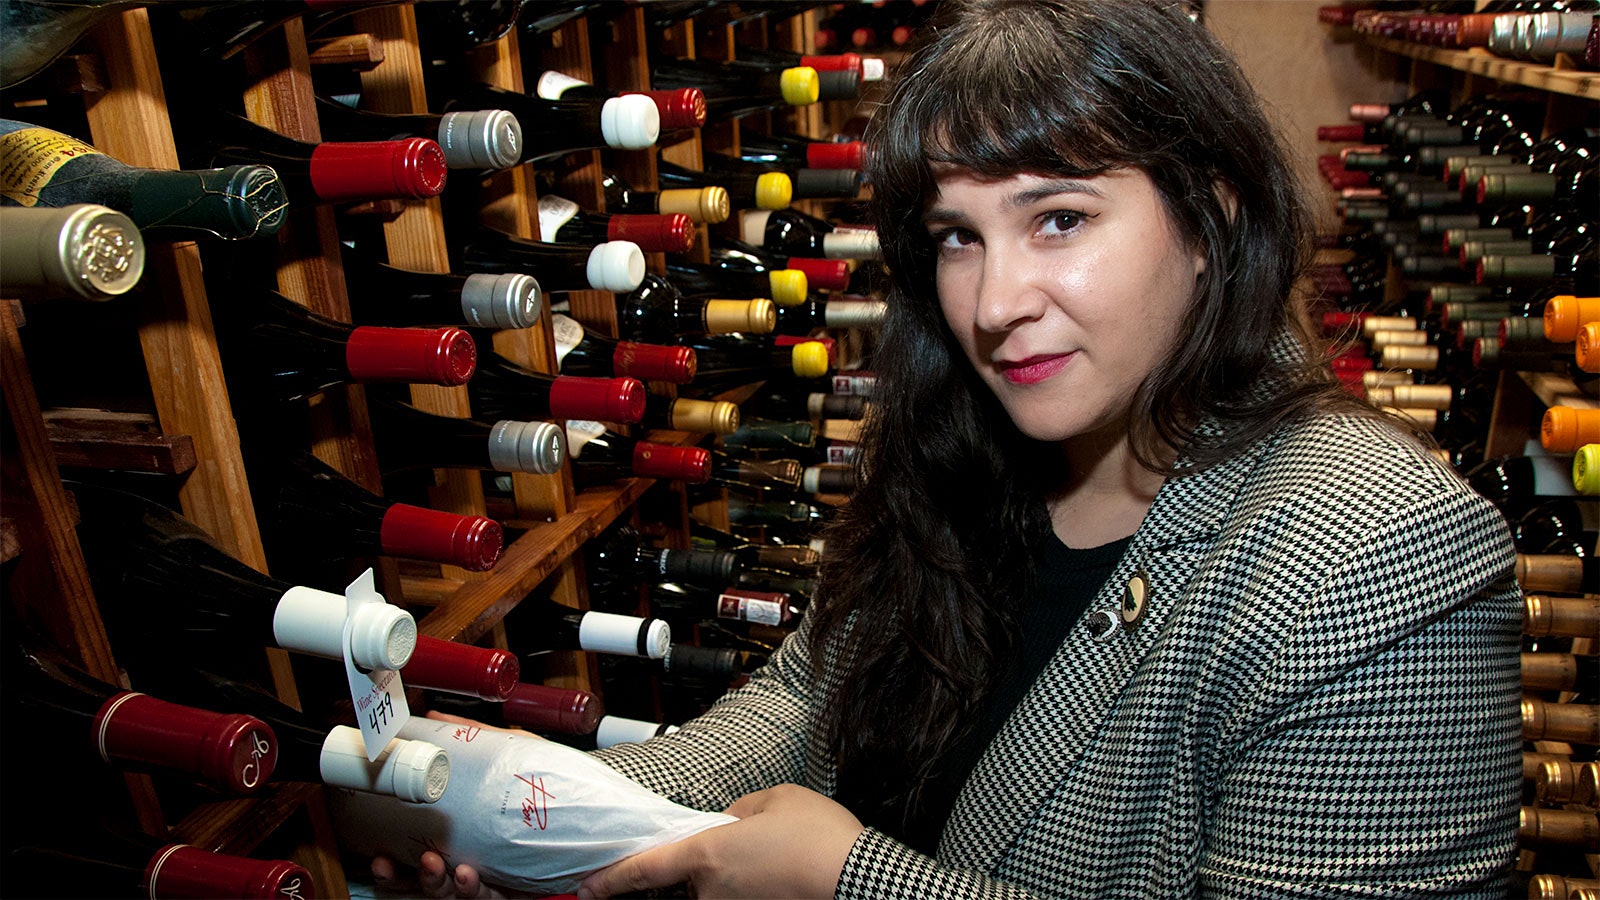  Jessica Elaine Garcia in El Meson’s wine cellar